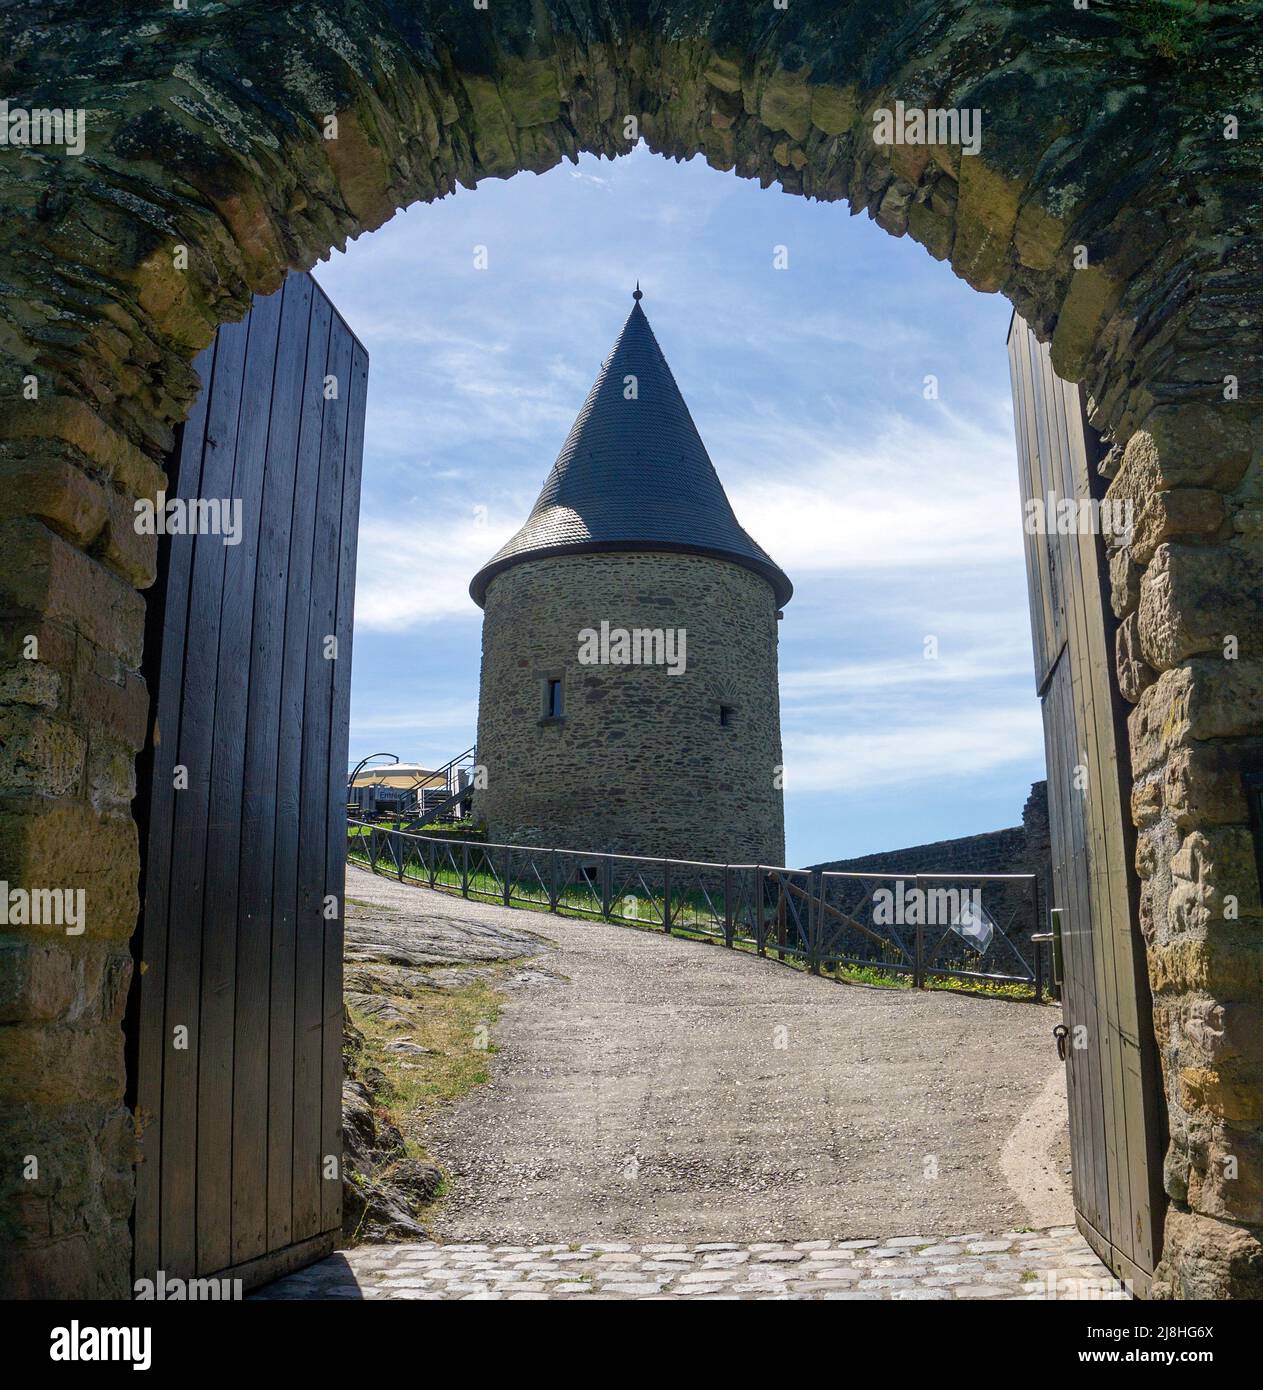 Entrée au château de Bourscheid, château médiéval à Bourscheid, quartier Diekirch, Ardennes, Luxembourg, Europe Banque D'Images